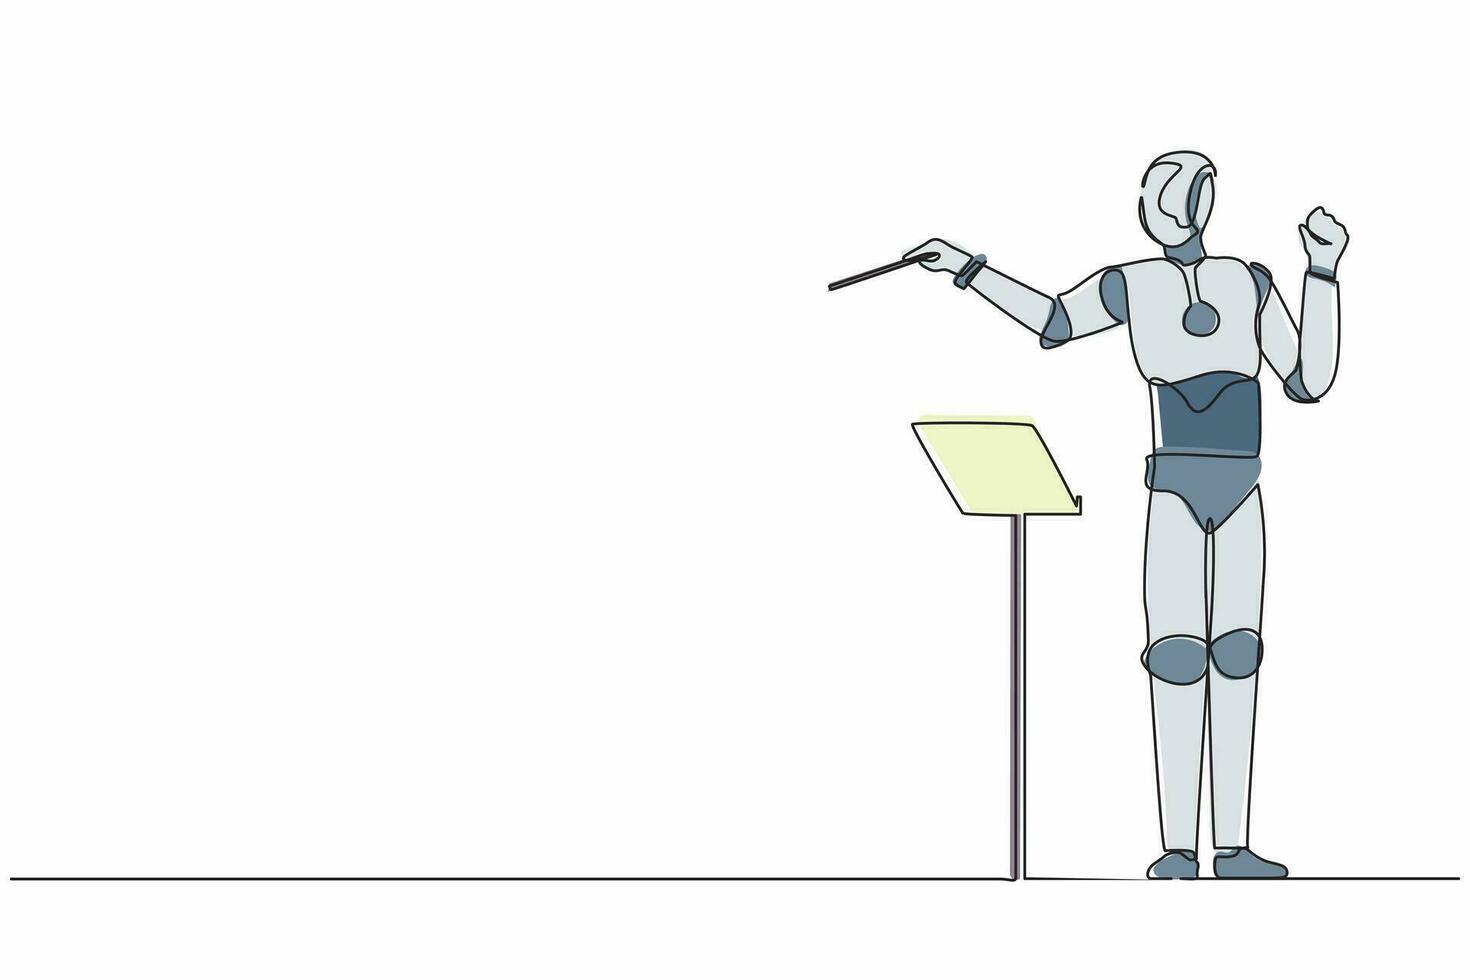 dibujo de una sola línea continua conductor robot expresivo dirige la orquesta musical. Inteligencia artificial robótica moderna. industria de la tecnología electrónica. ilustración de vector de diseño gráfico de una línea